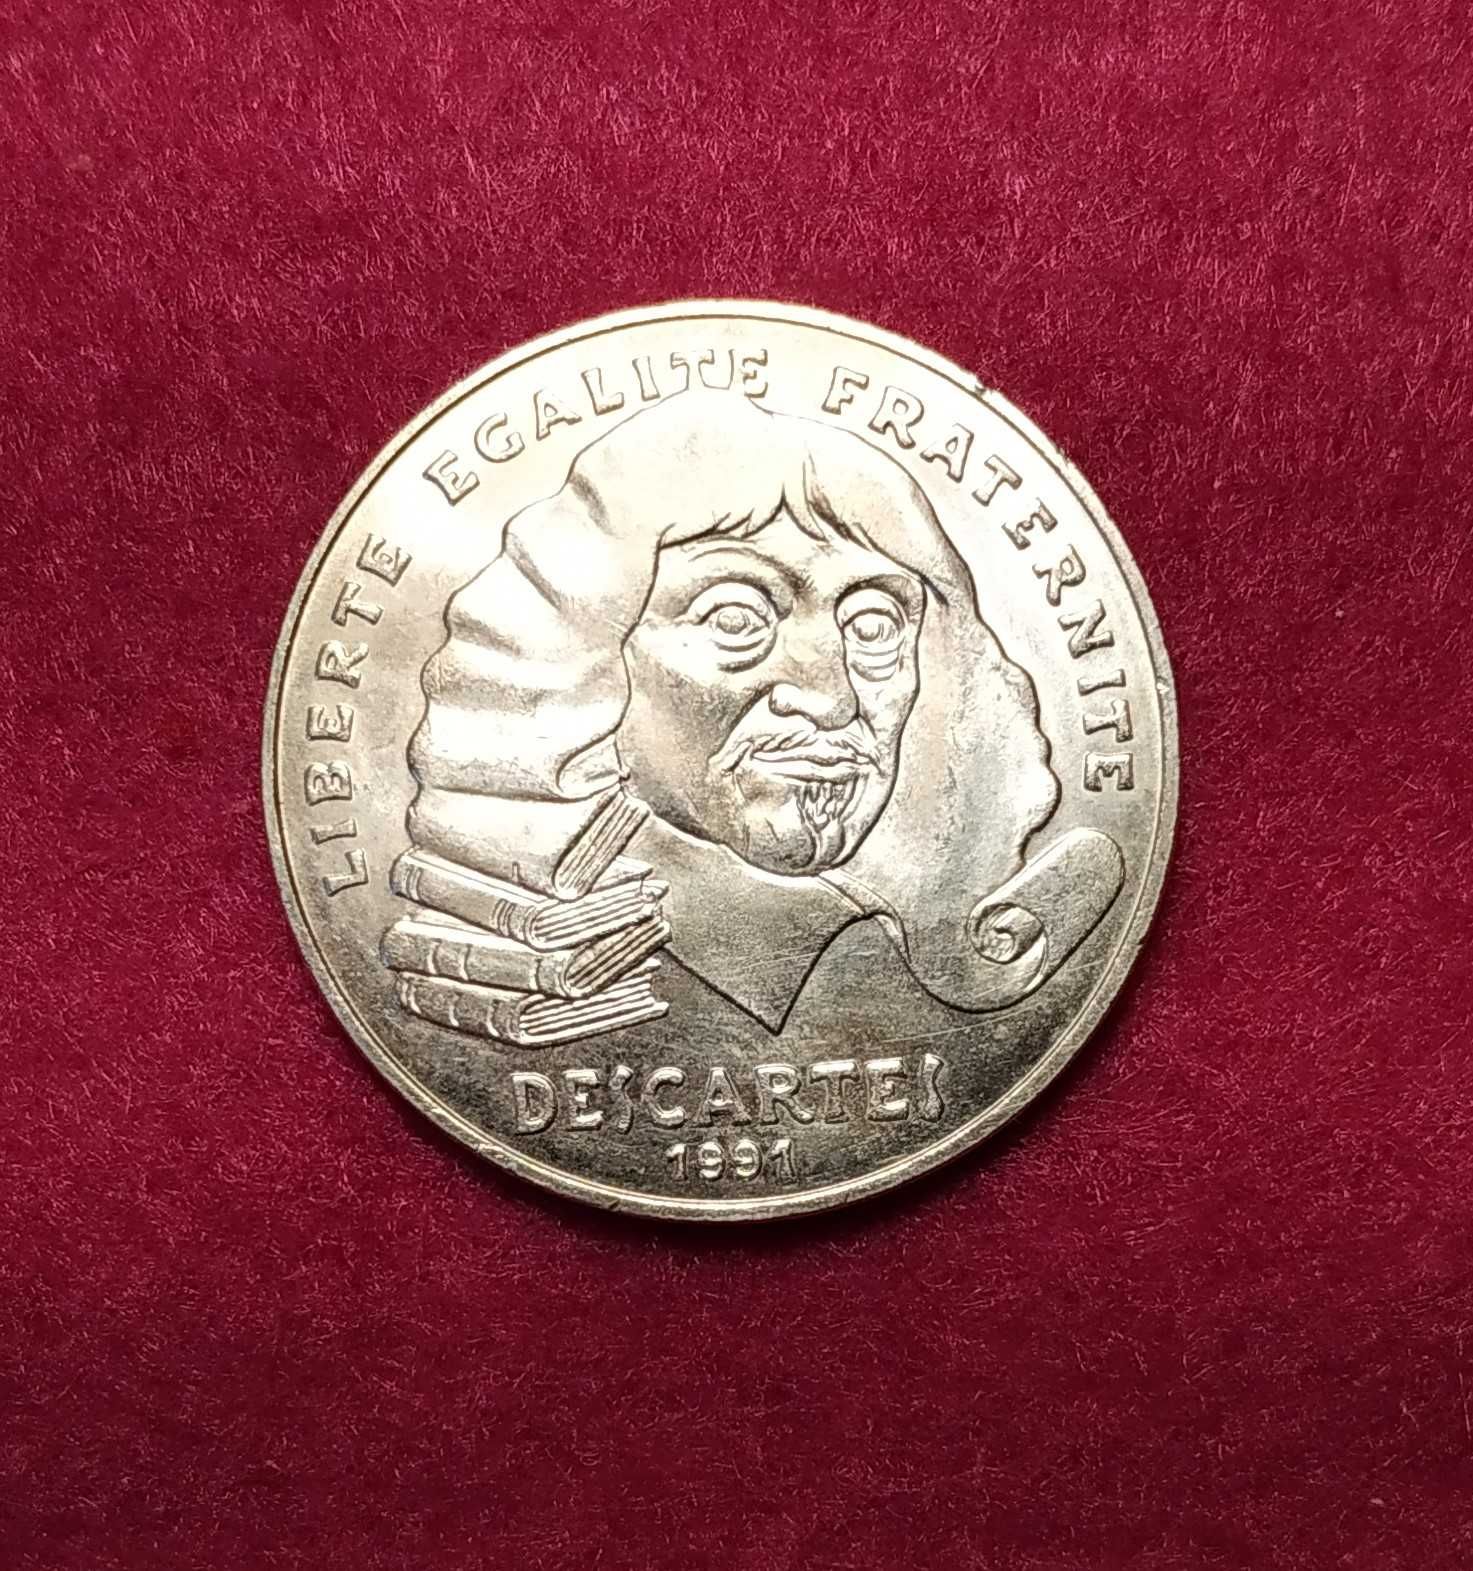 França - moeda em prata de 100 francos de 1991 - Descartes